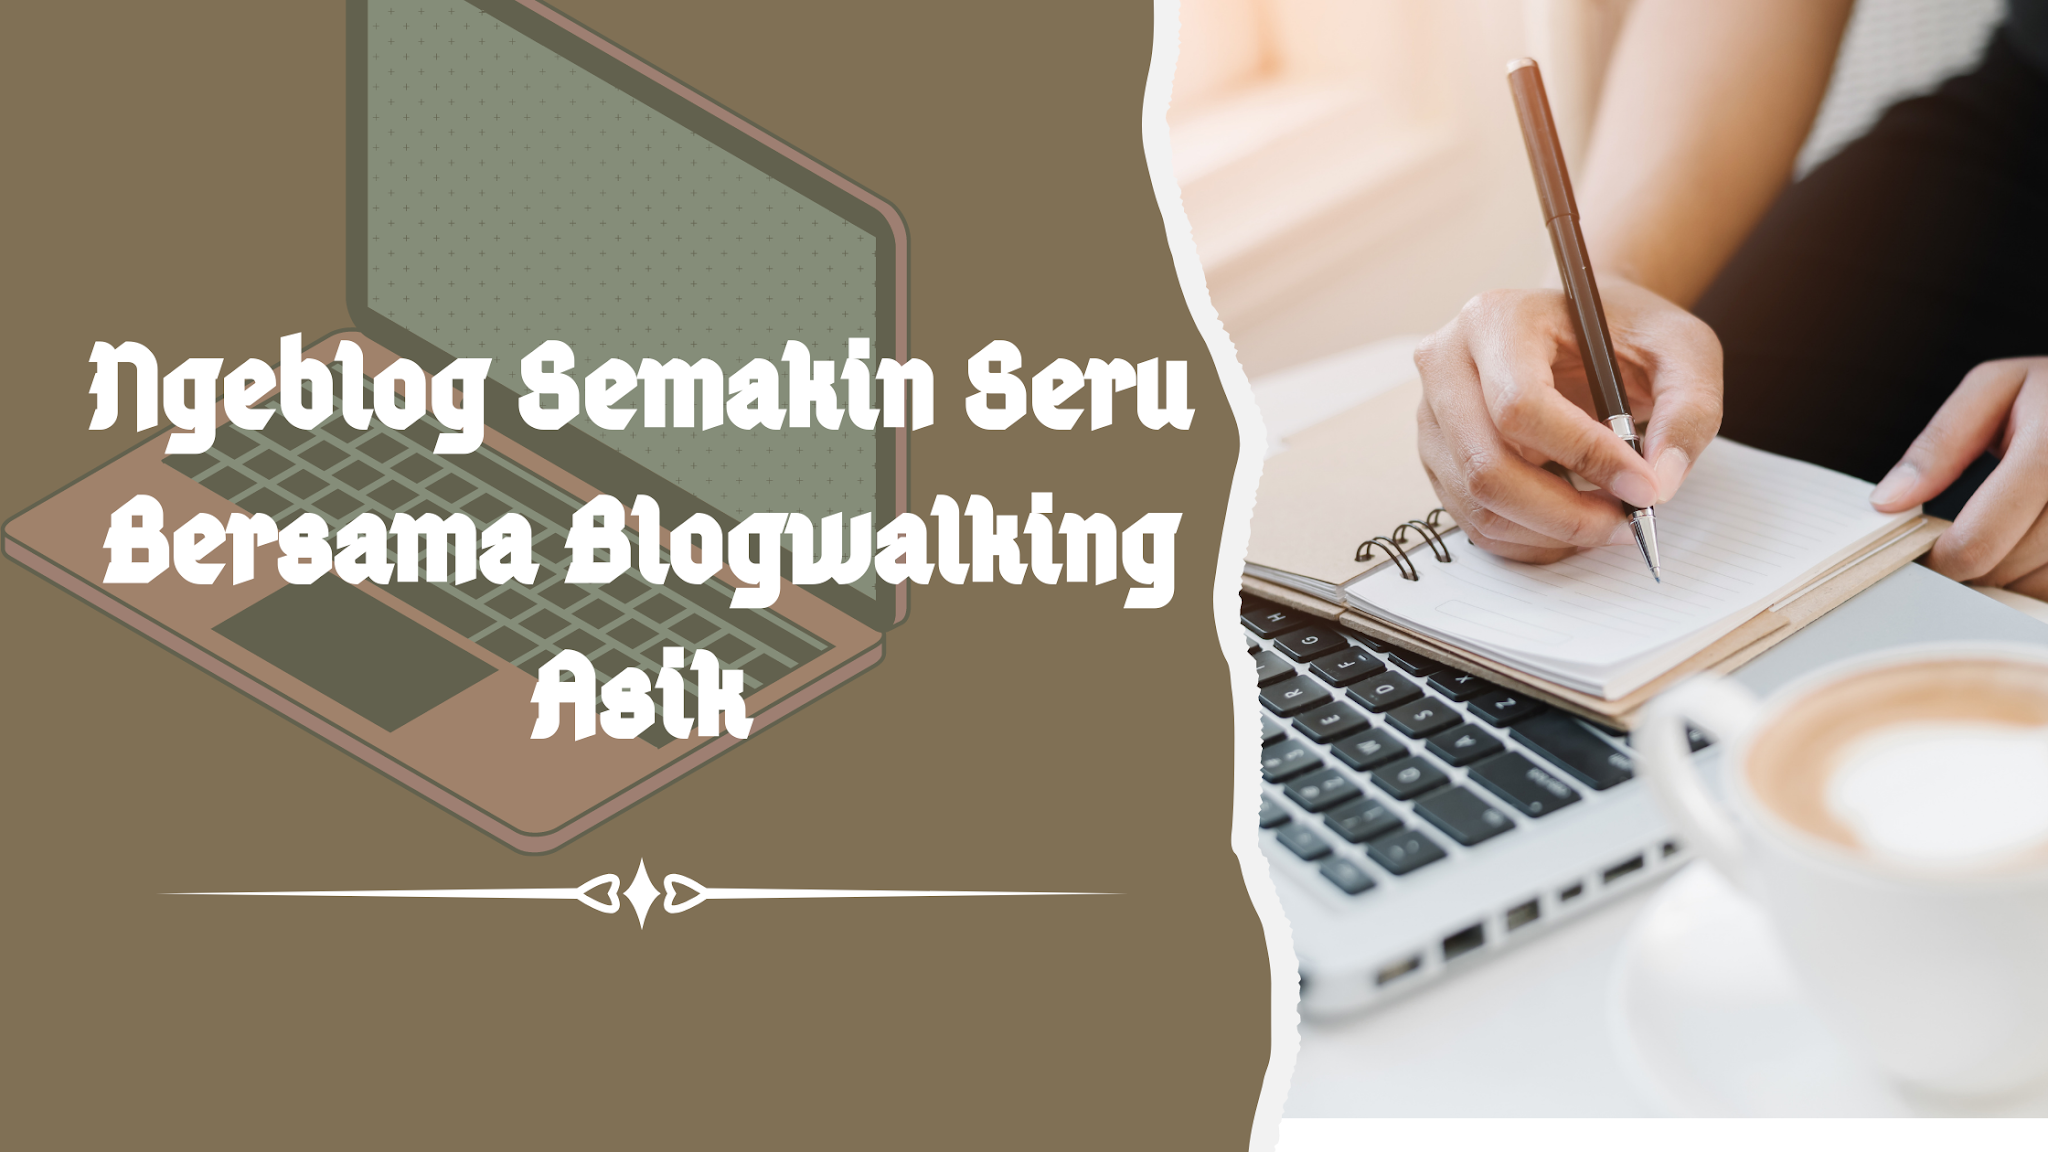 Ngeblog+seru+bersama-blogwalking+asik